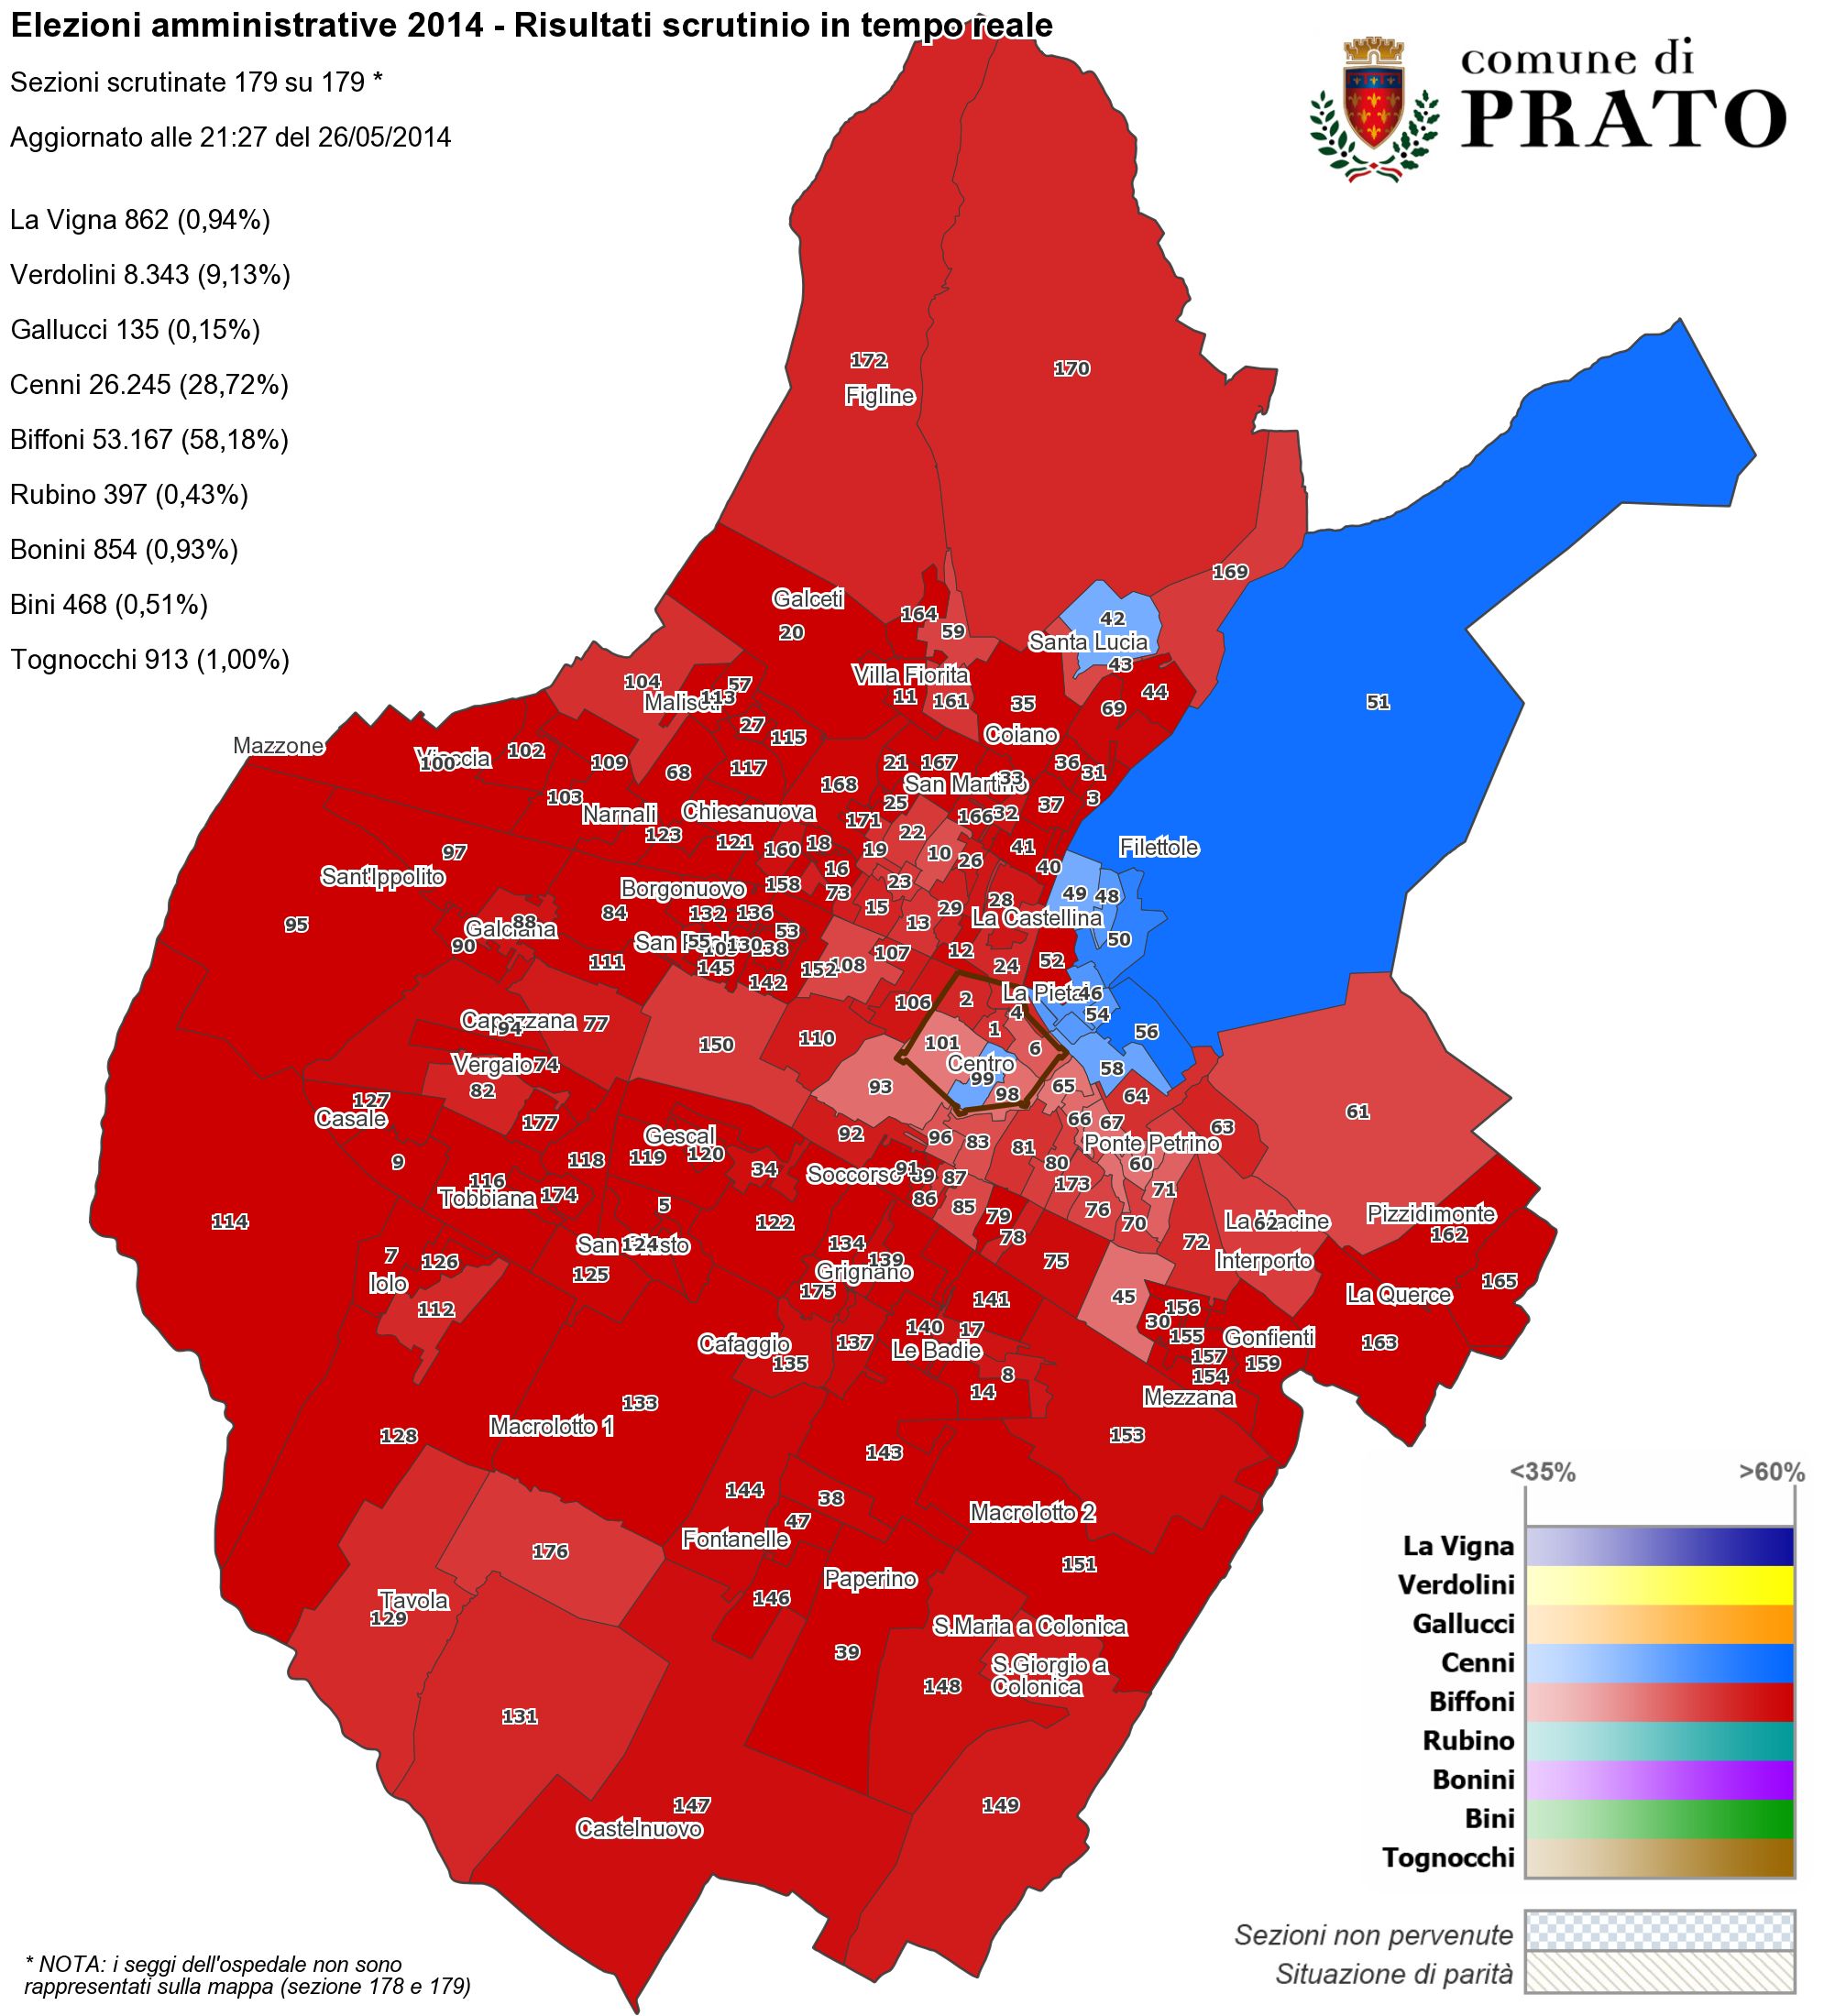 Mappa di Prato con la distribuzione dei voti ai candidati Sindaco